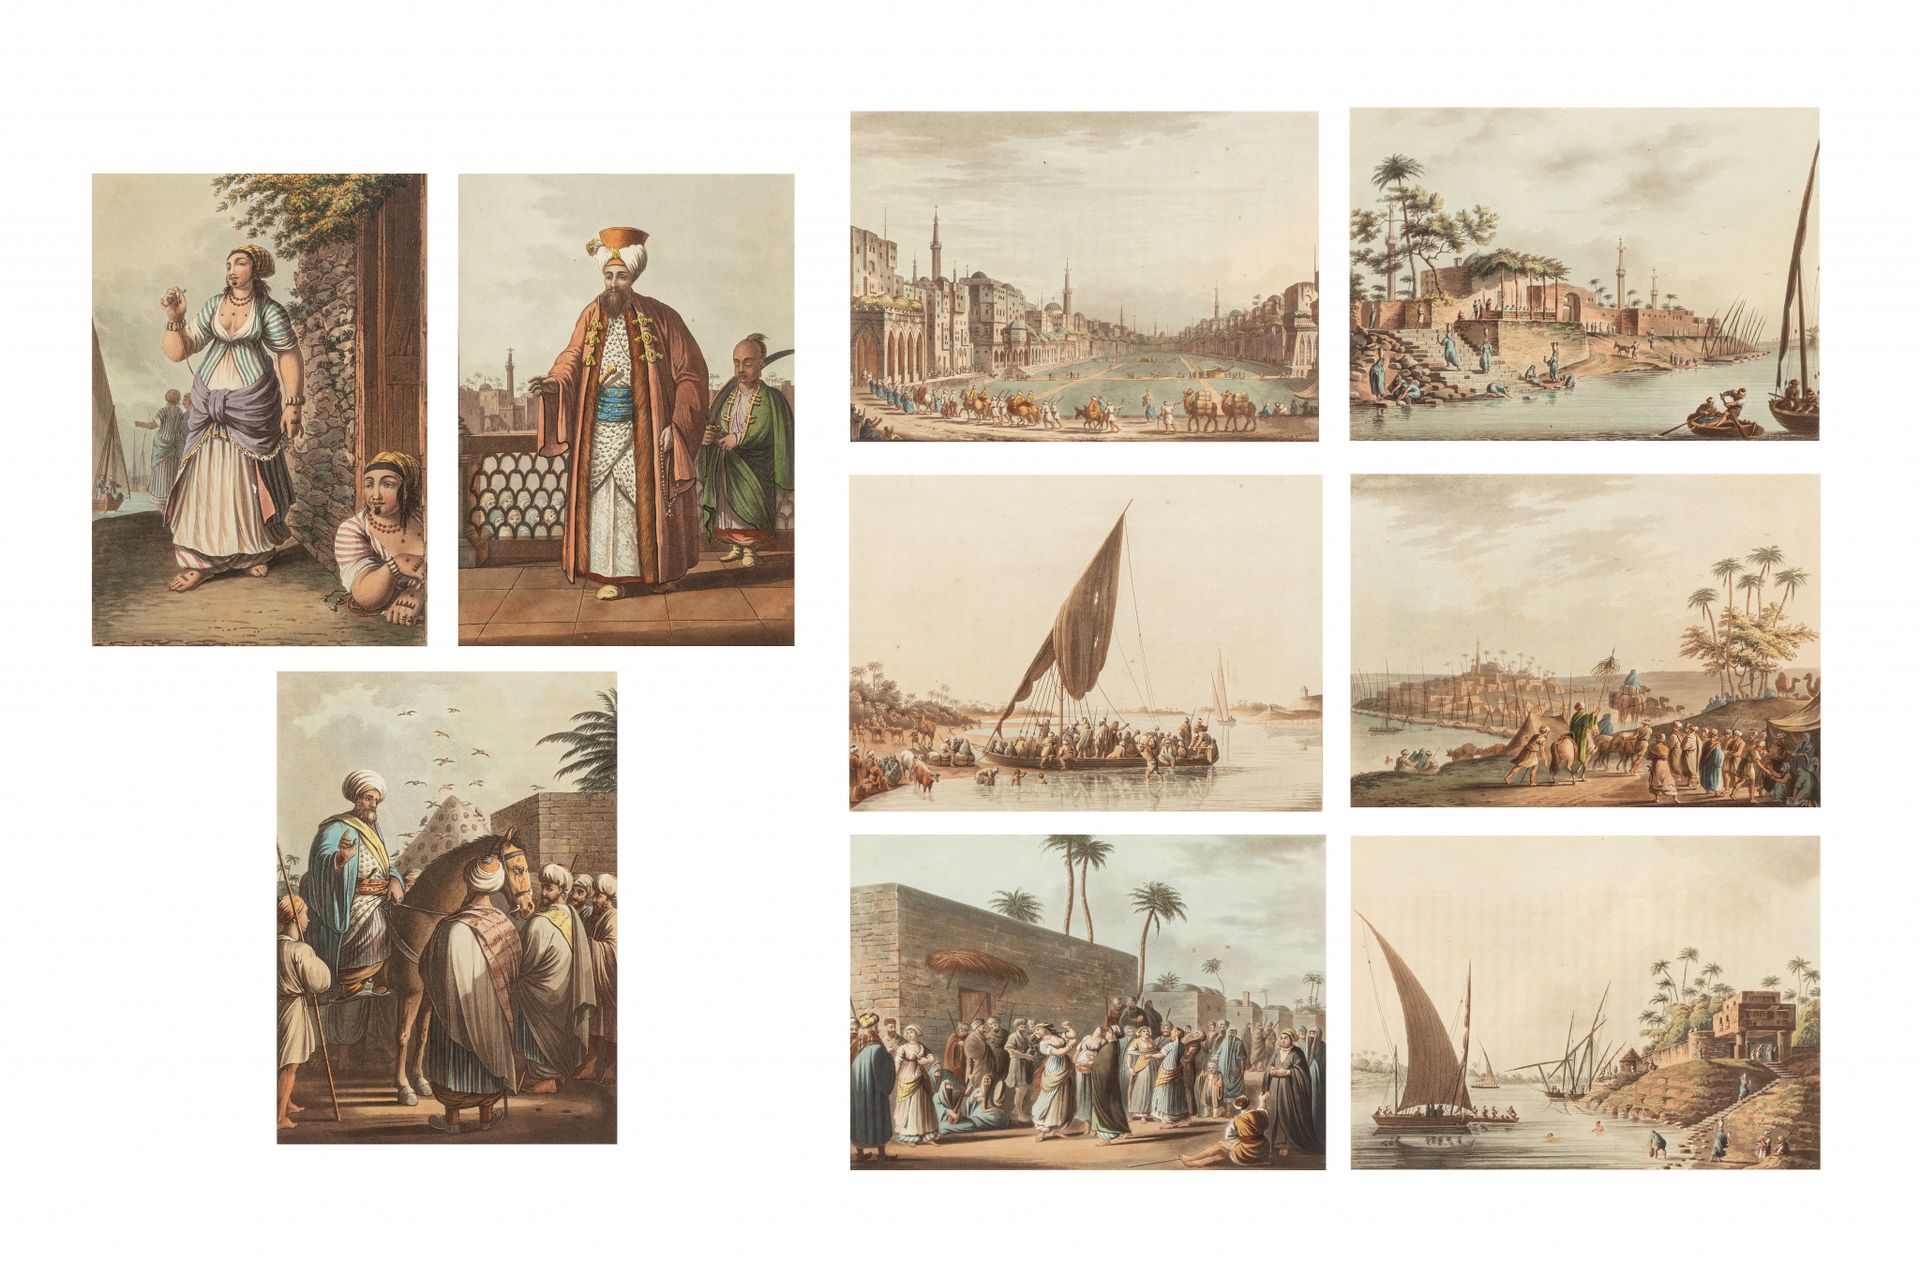 Neuf gravures sur l'Egypte Londres, 1802, éditées par Robert Bowyer (1758-1834)
&hellip;